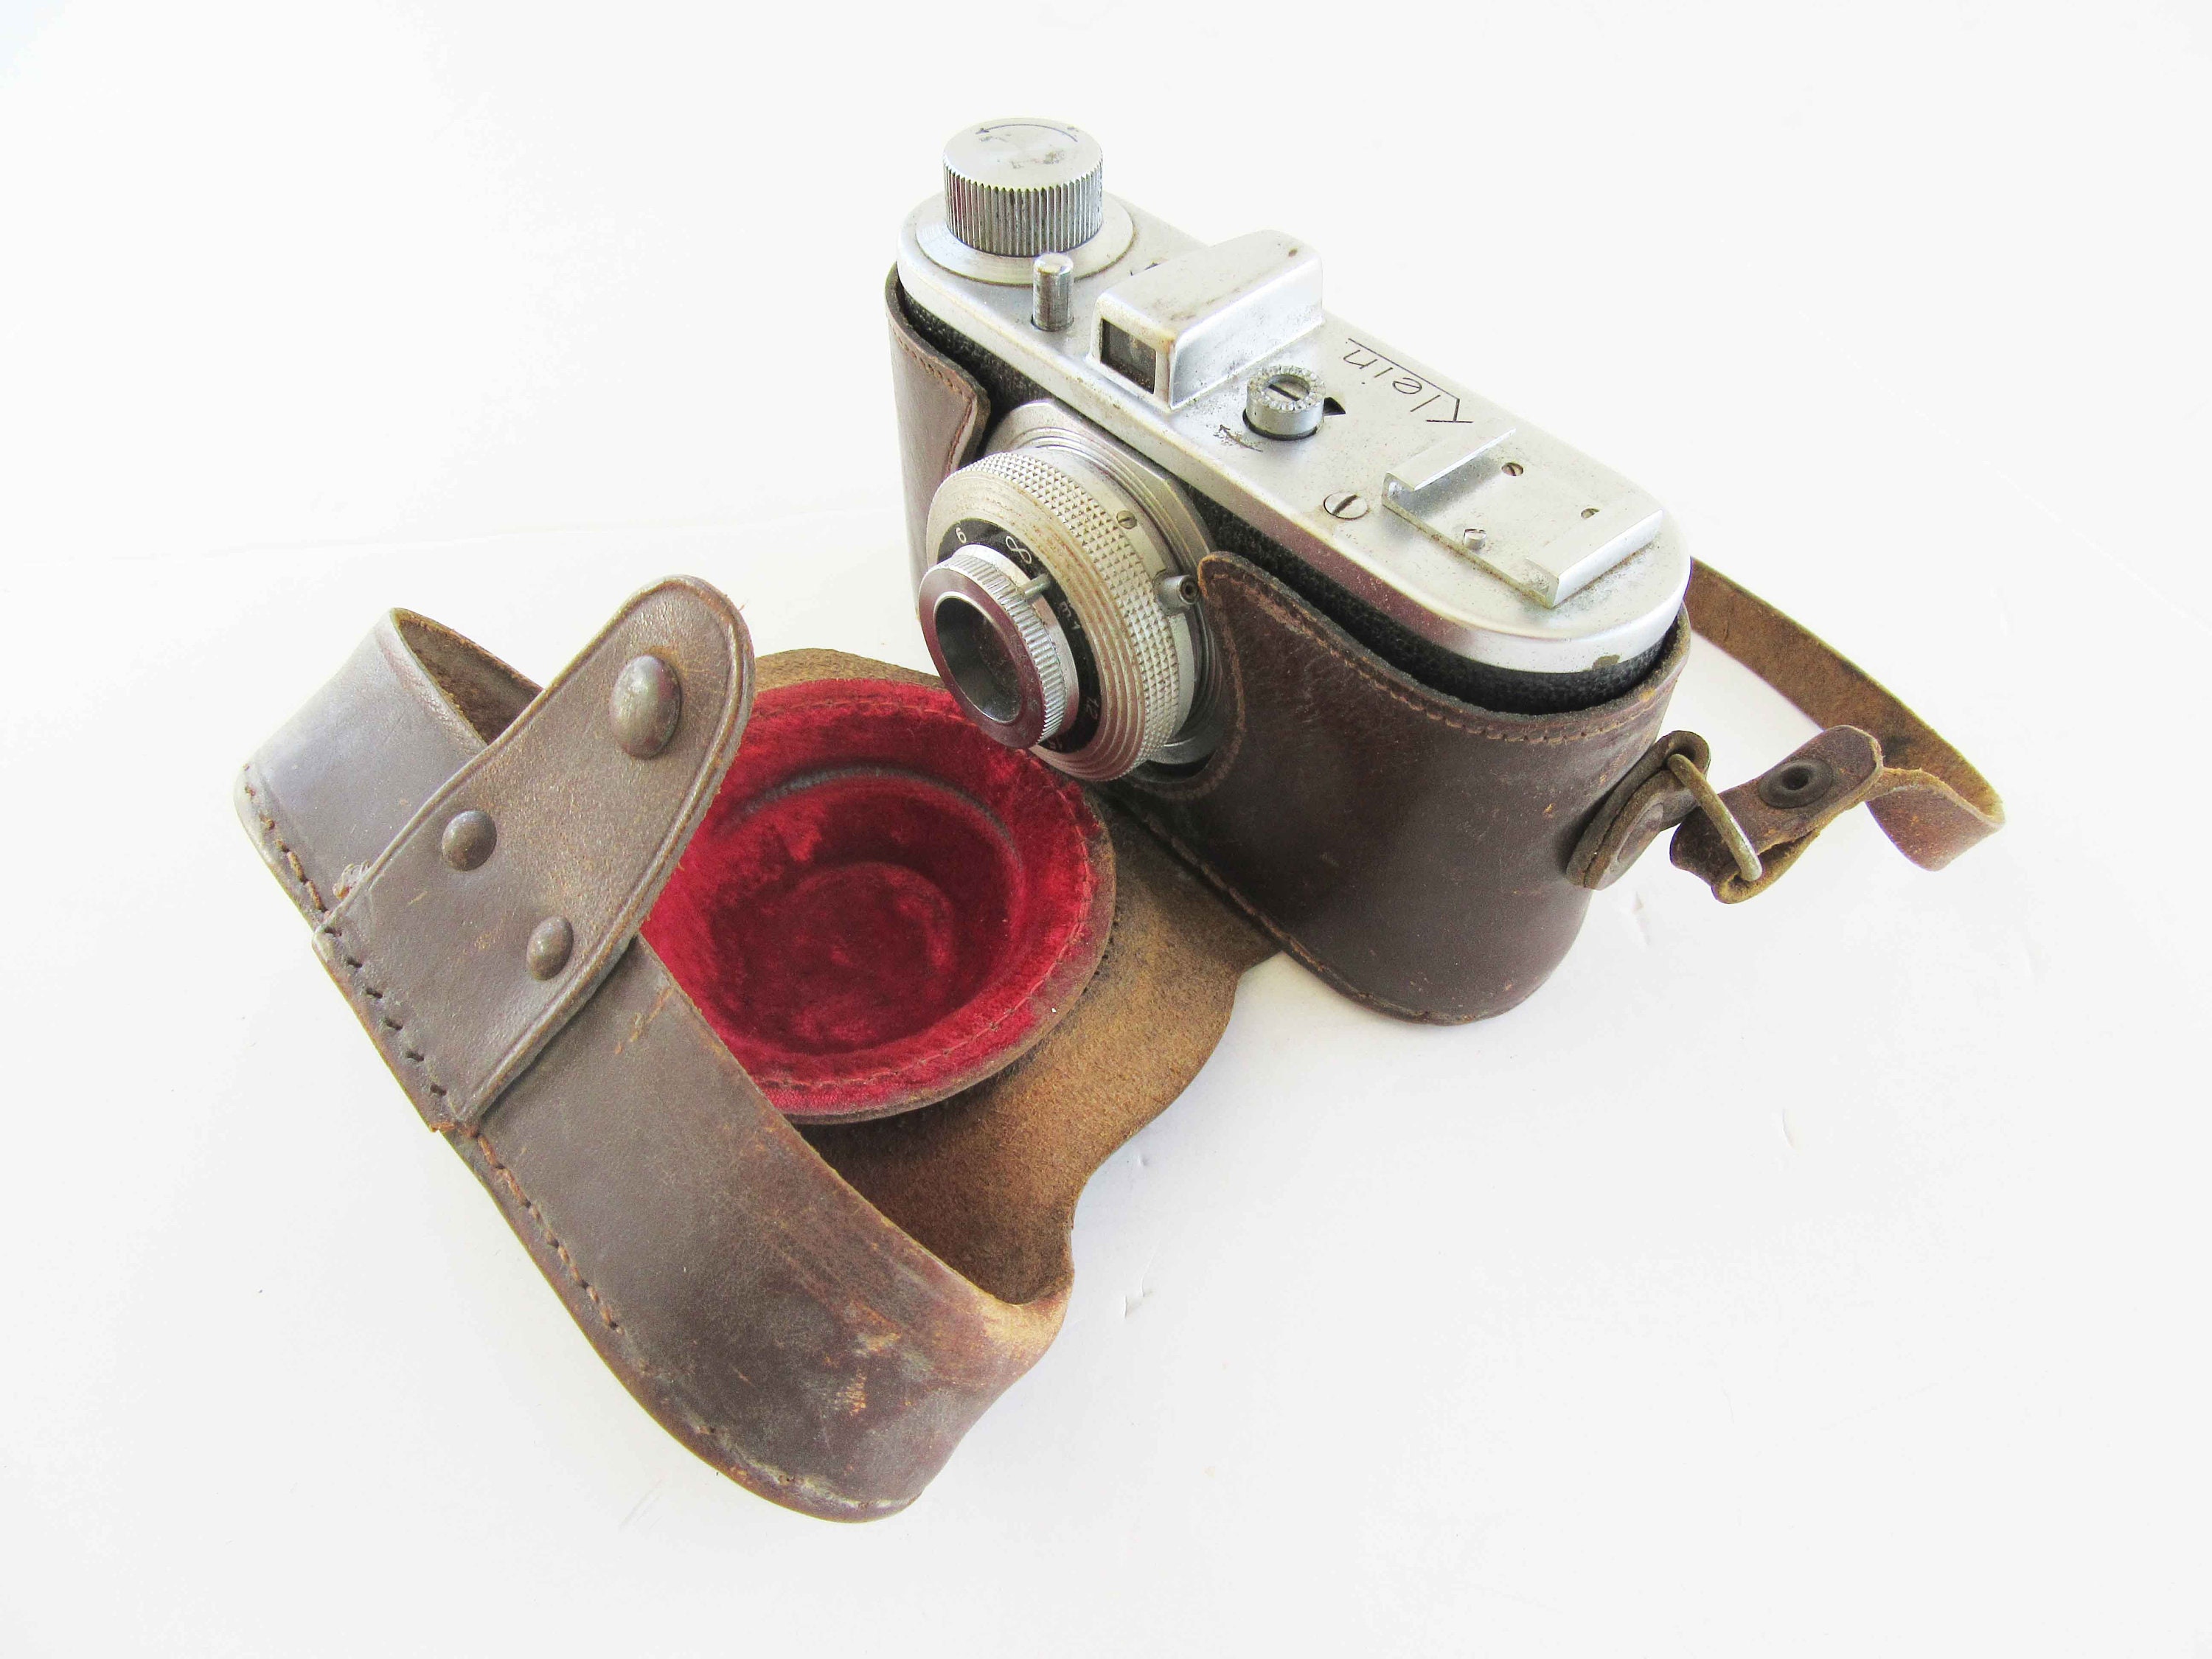 A Vintage Small klein Camera Very Rare -